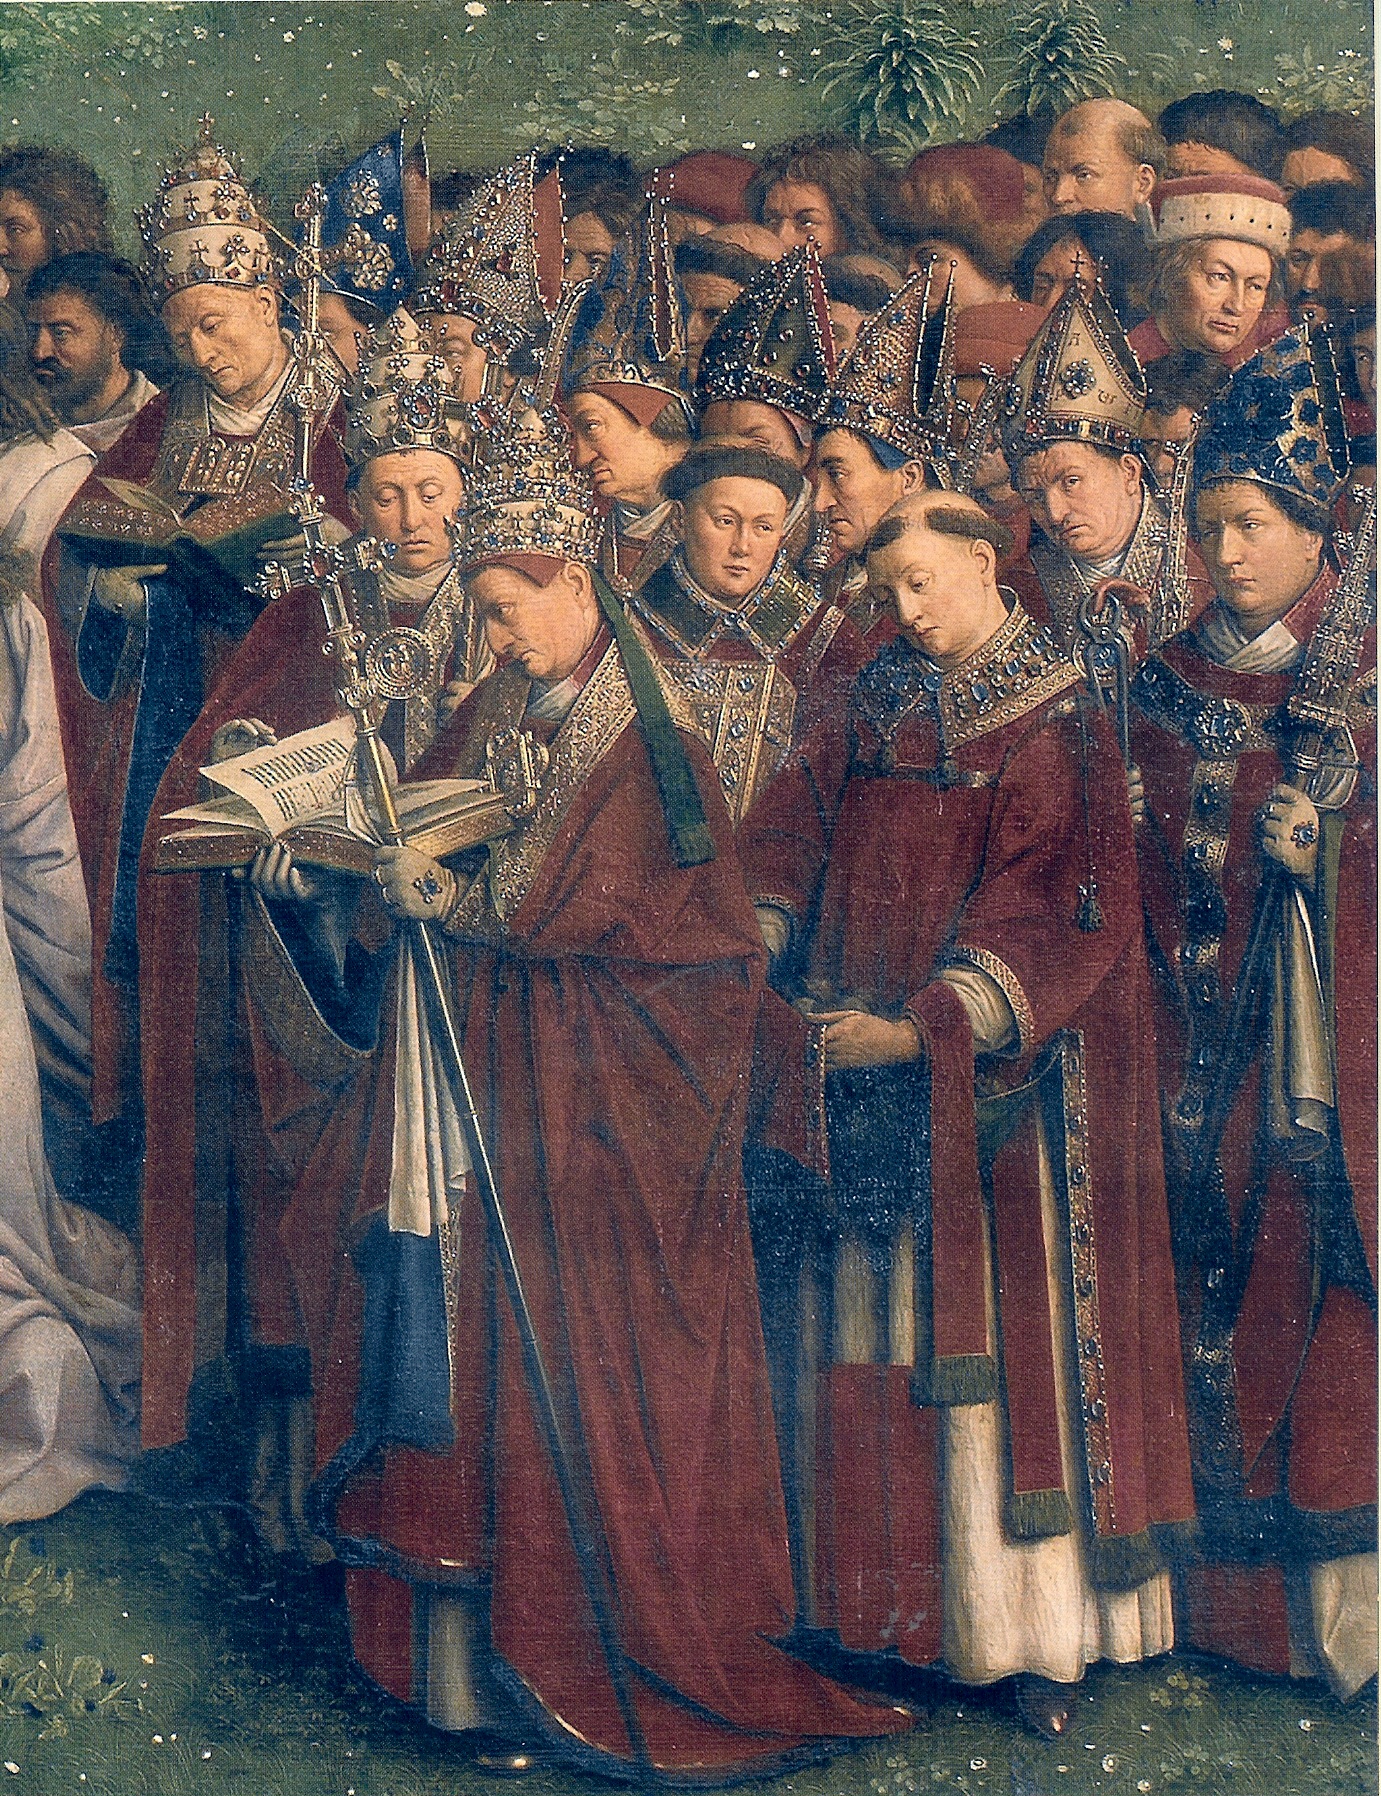 Papieże i biskupi (Jan van Eyck, Ołtarz Gandawski, 1432)